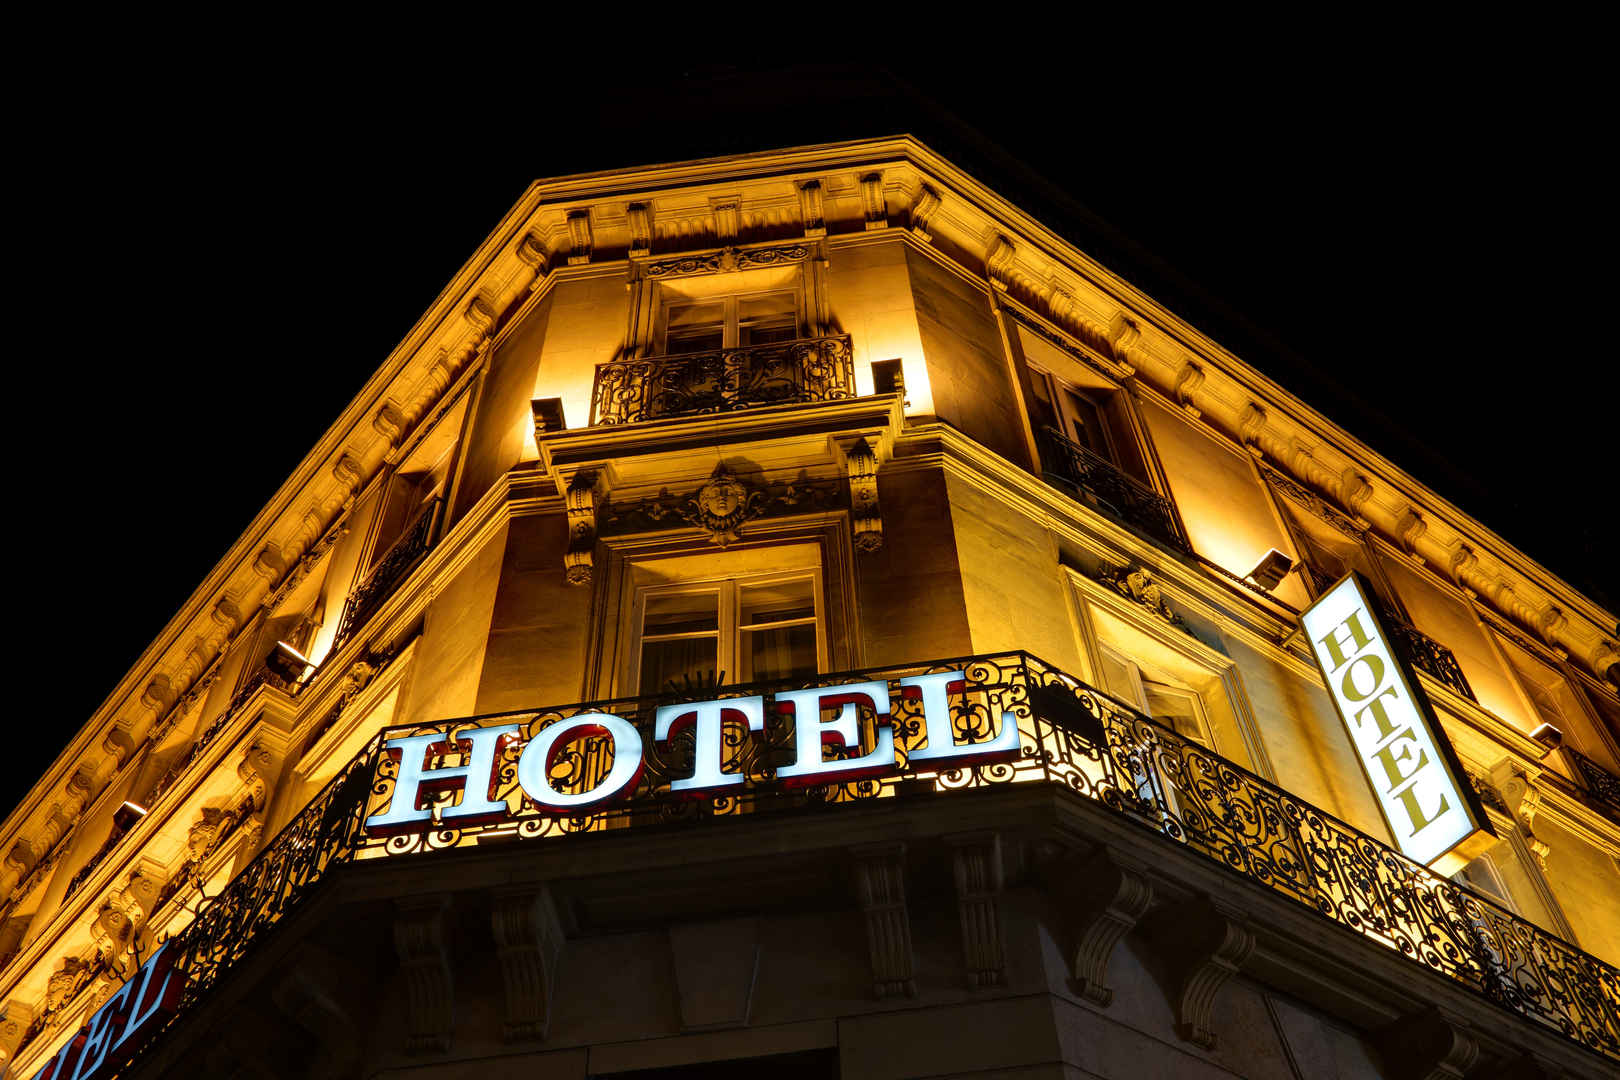 晚上HOTEL的酒店暗黄色照明标志